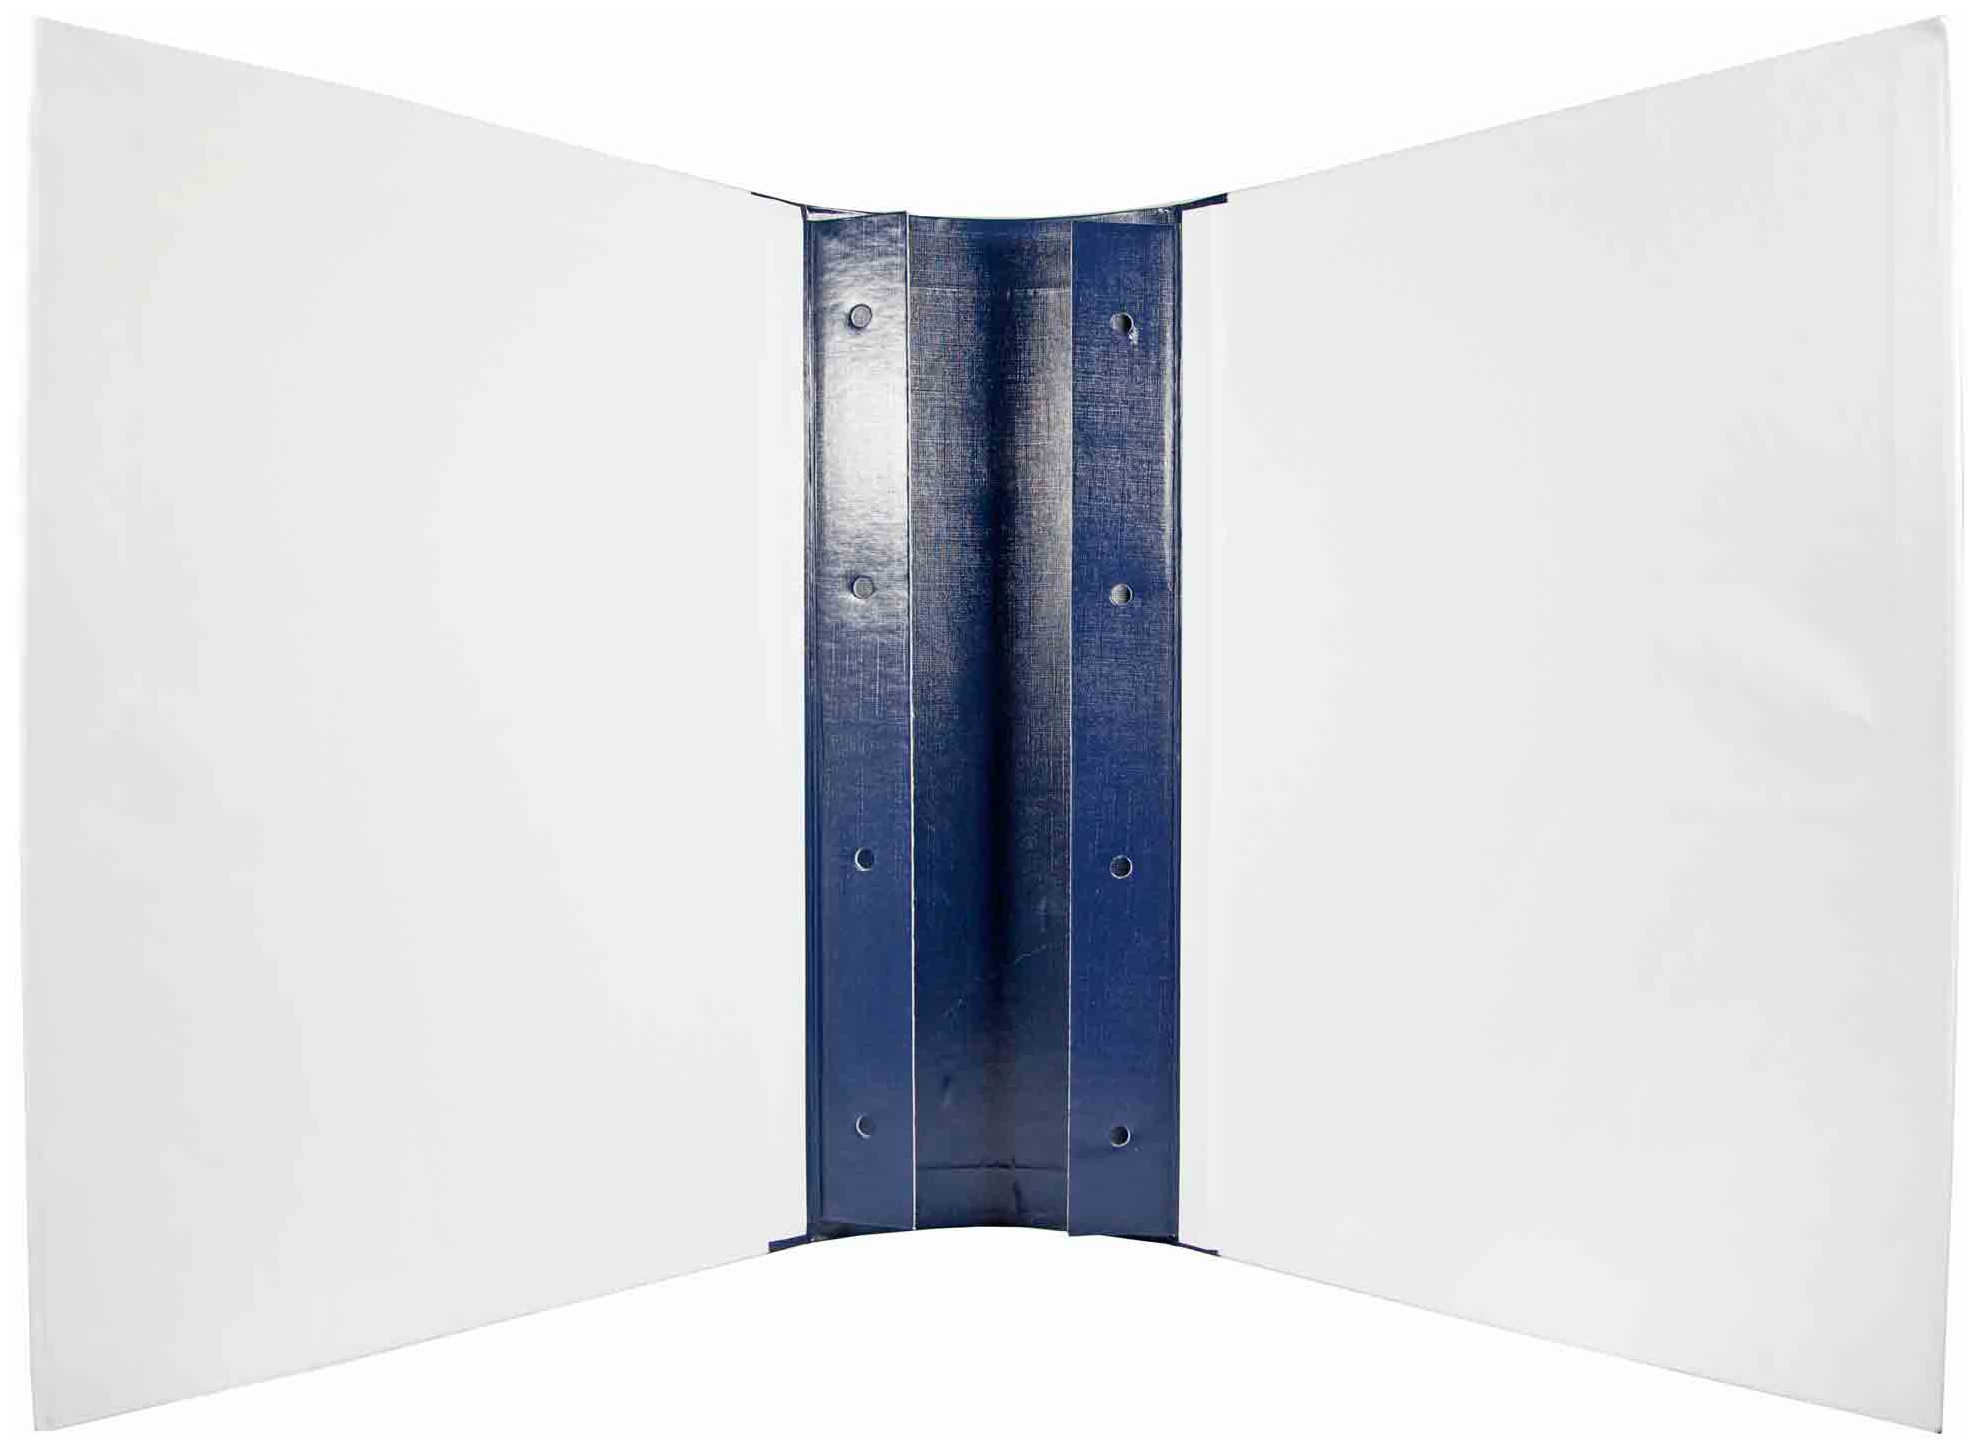 Цена: 138.88 руб. Архивная папка "Дело" (форма 21) А4, 120 мм, бумвинил, с Г-образными гребешками, шнурки, синяя